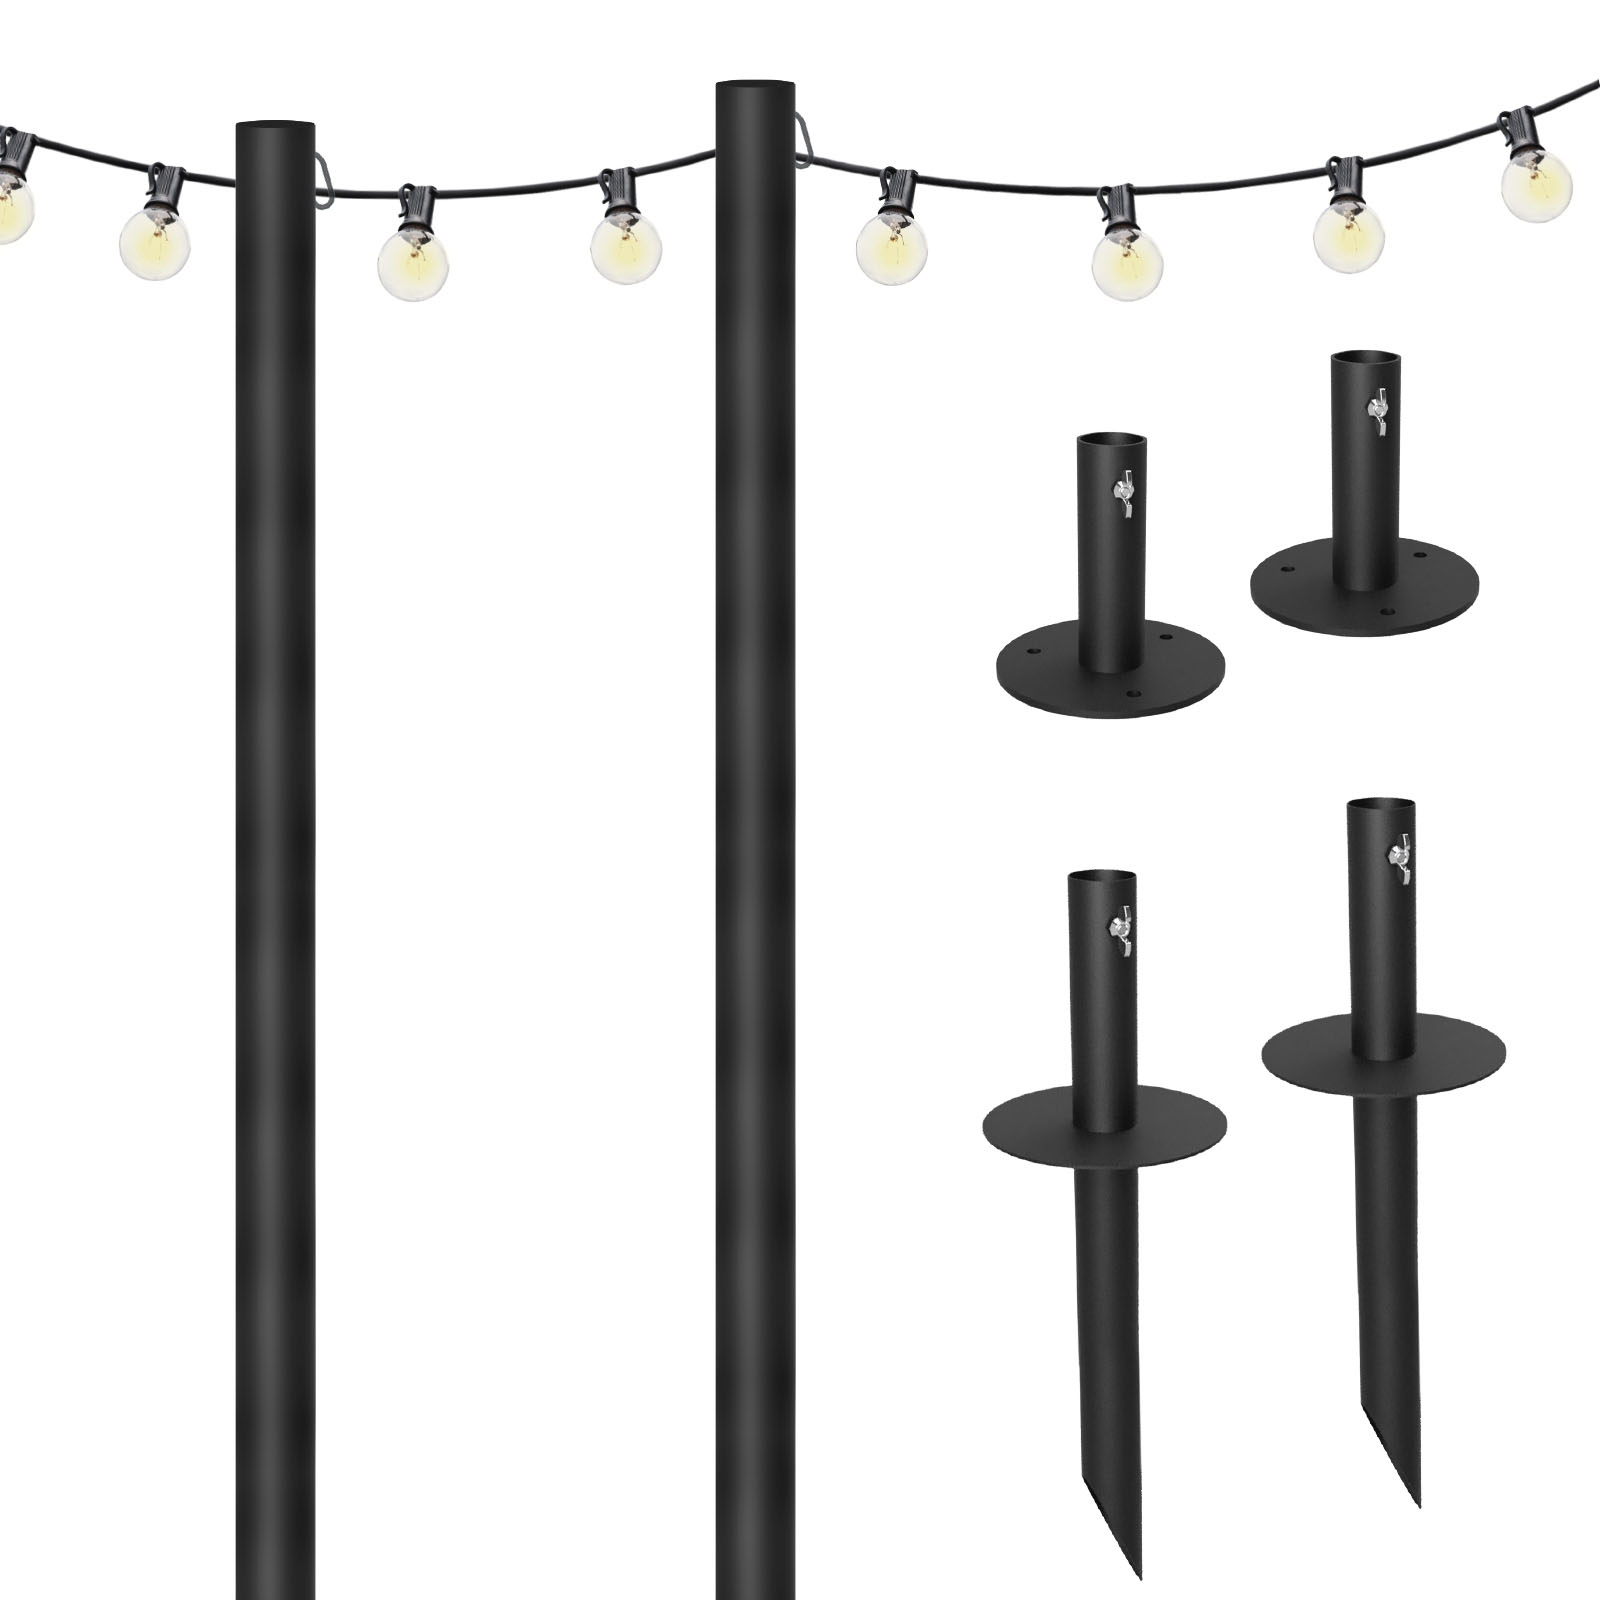 Bistro String Light Poles & 50ft of String Lights